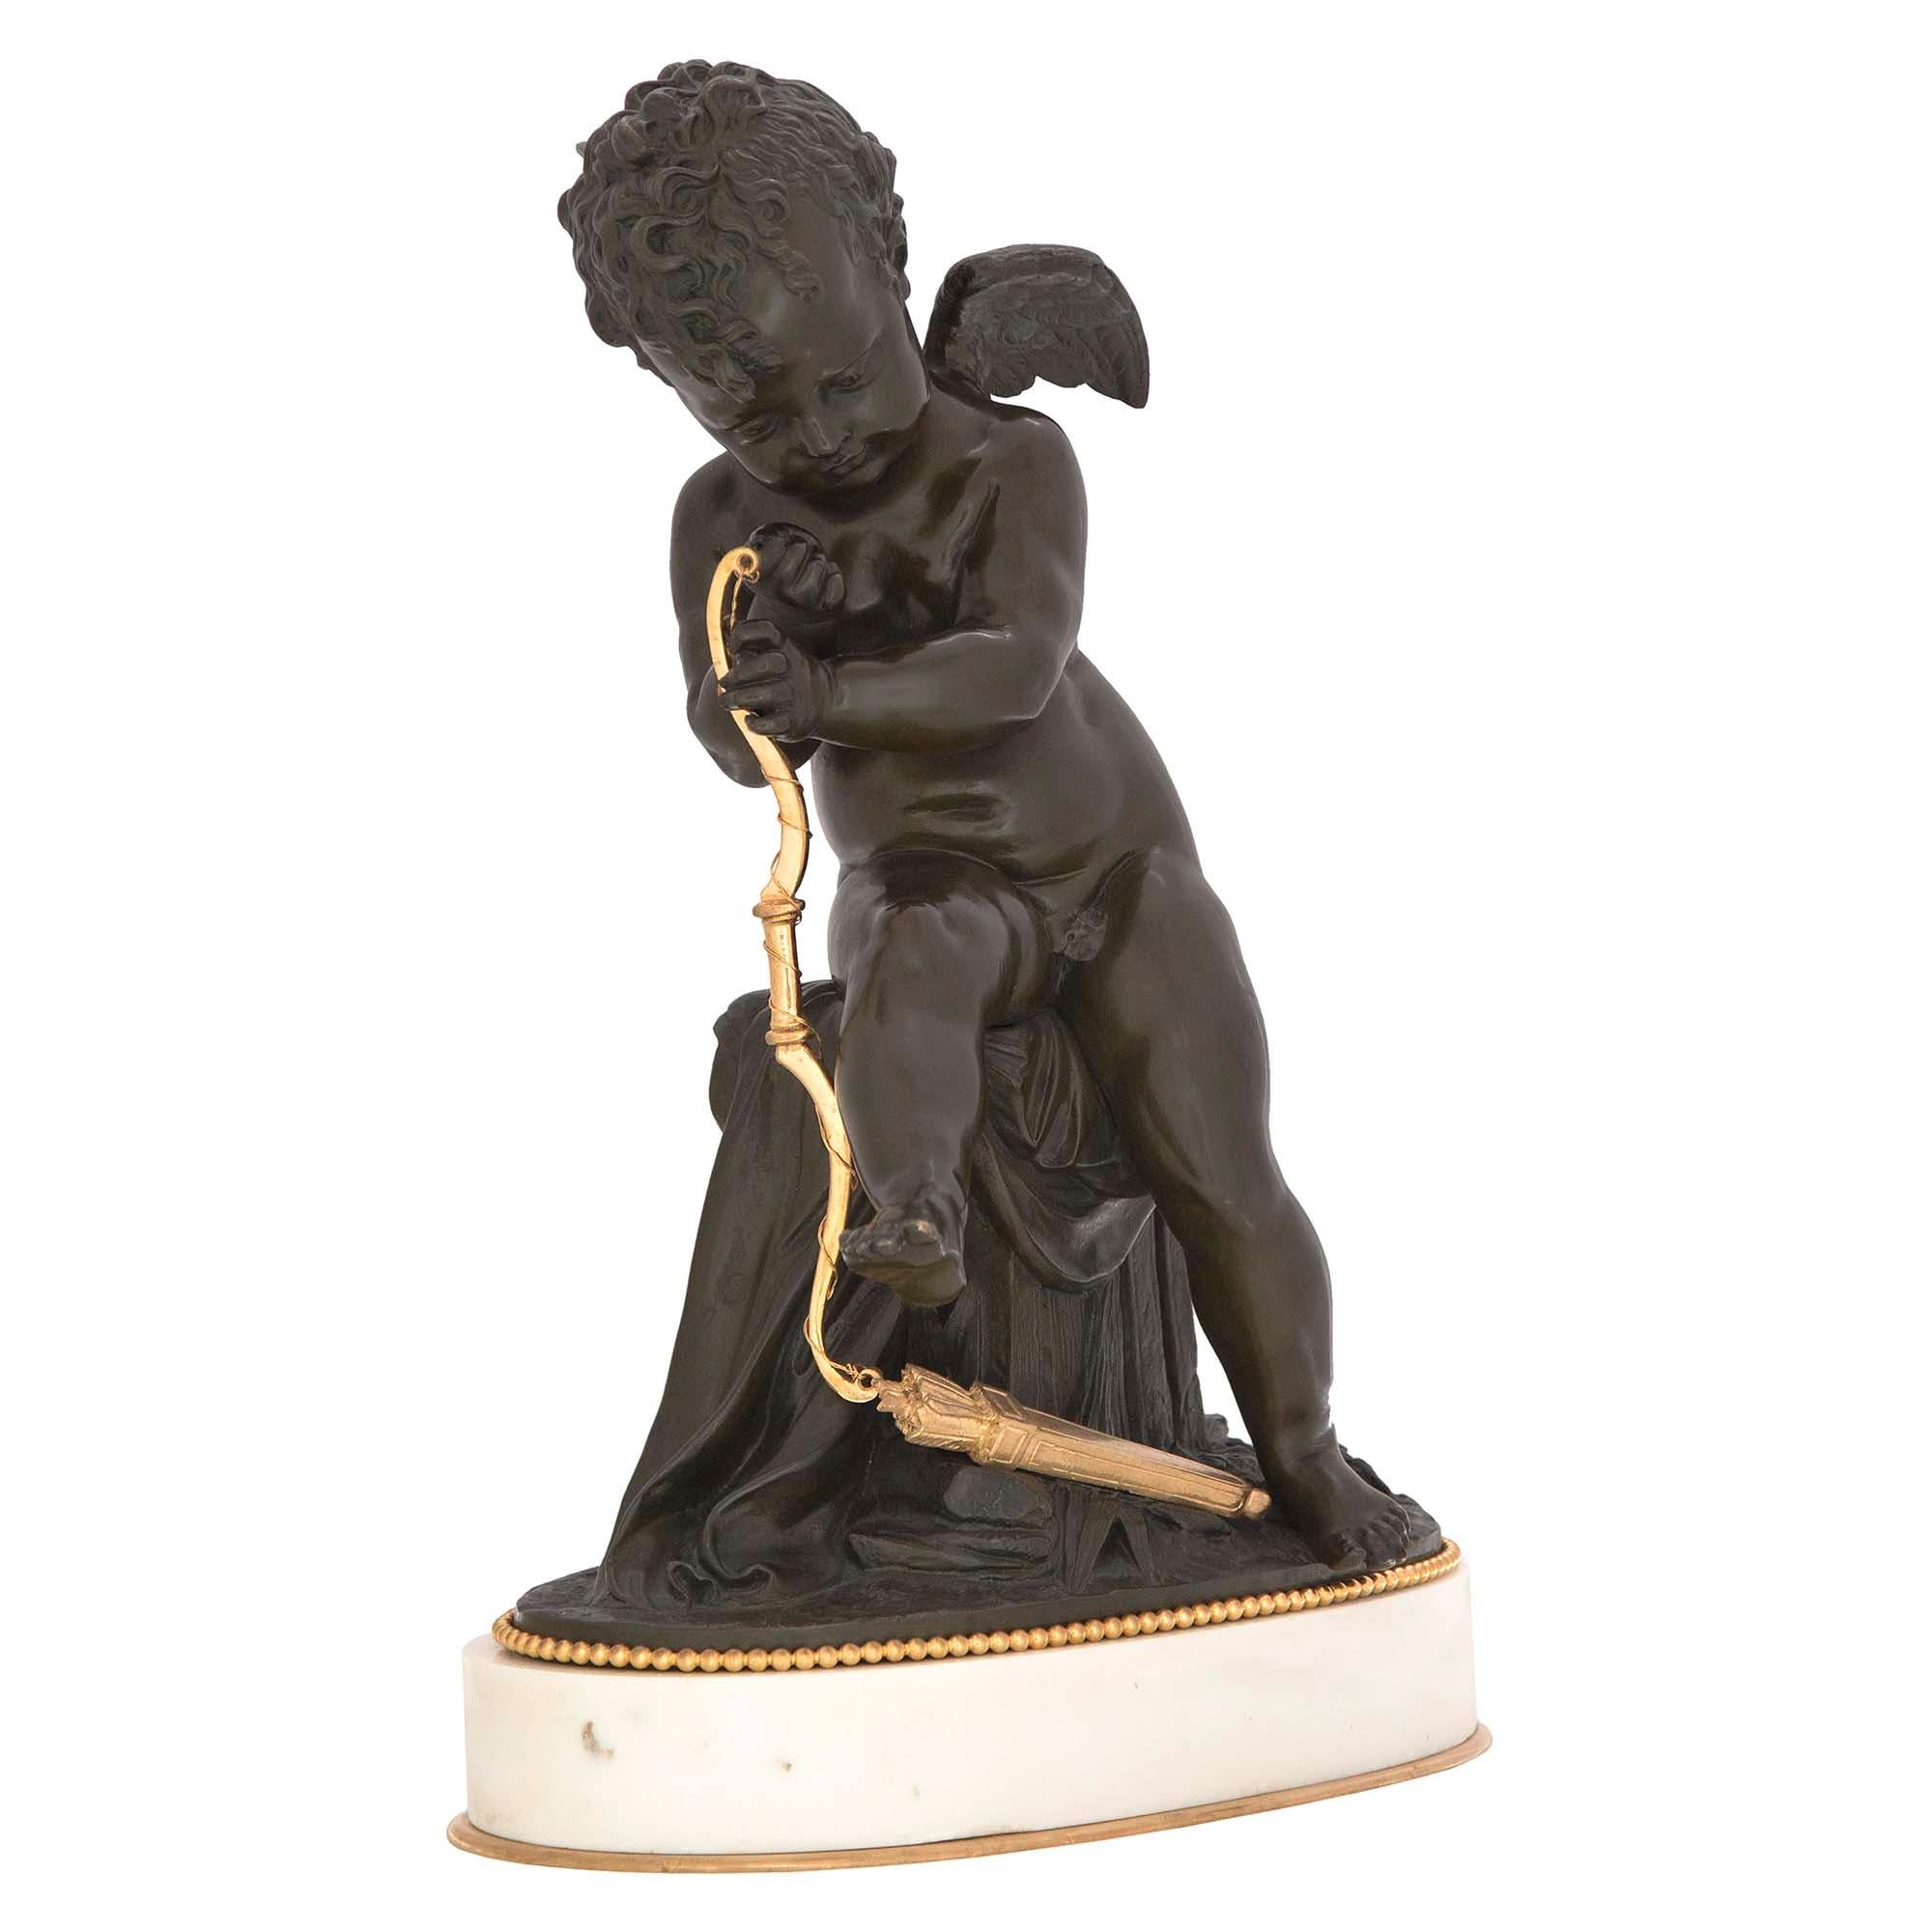 Statue de grande qualité et très charmante, de style Louis XVI, datant du XIXe siècle, en bronze patiné, bronze doré et marbre blanc de Carrare, signée Lemire. La statue est surélevée par un socle ovale en marbre blanc de Carrare avec un filet